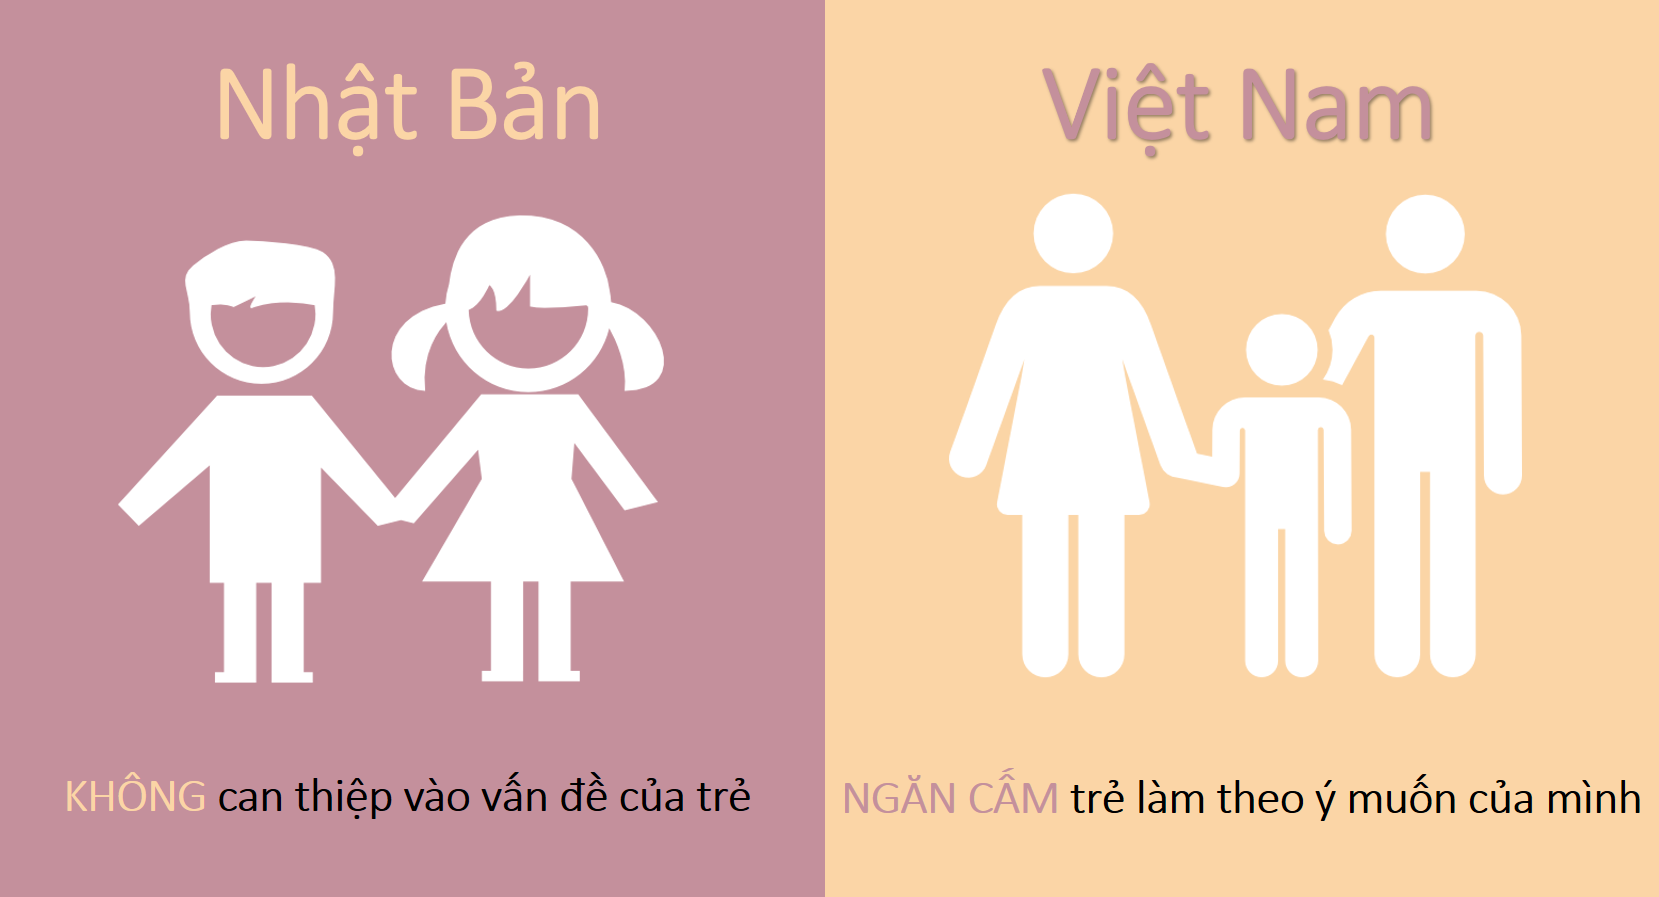 5 điểm khác biệt trong cách nuôi dạy trẻ của người Nhật và người Việt (từ 0 đến 10 tuổi)